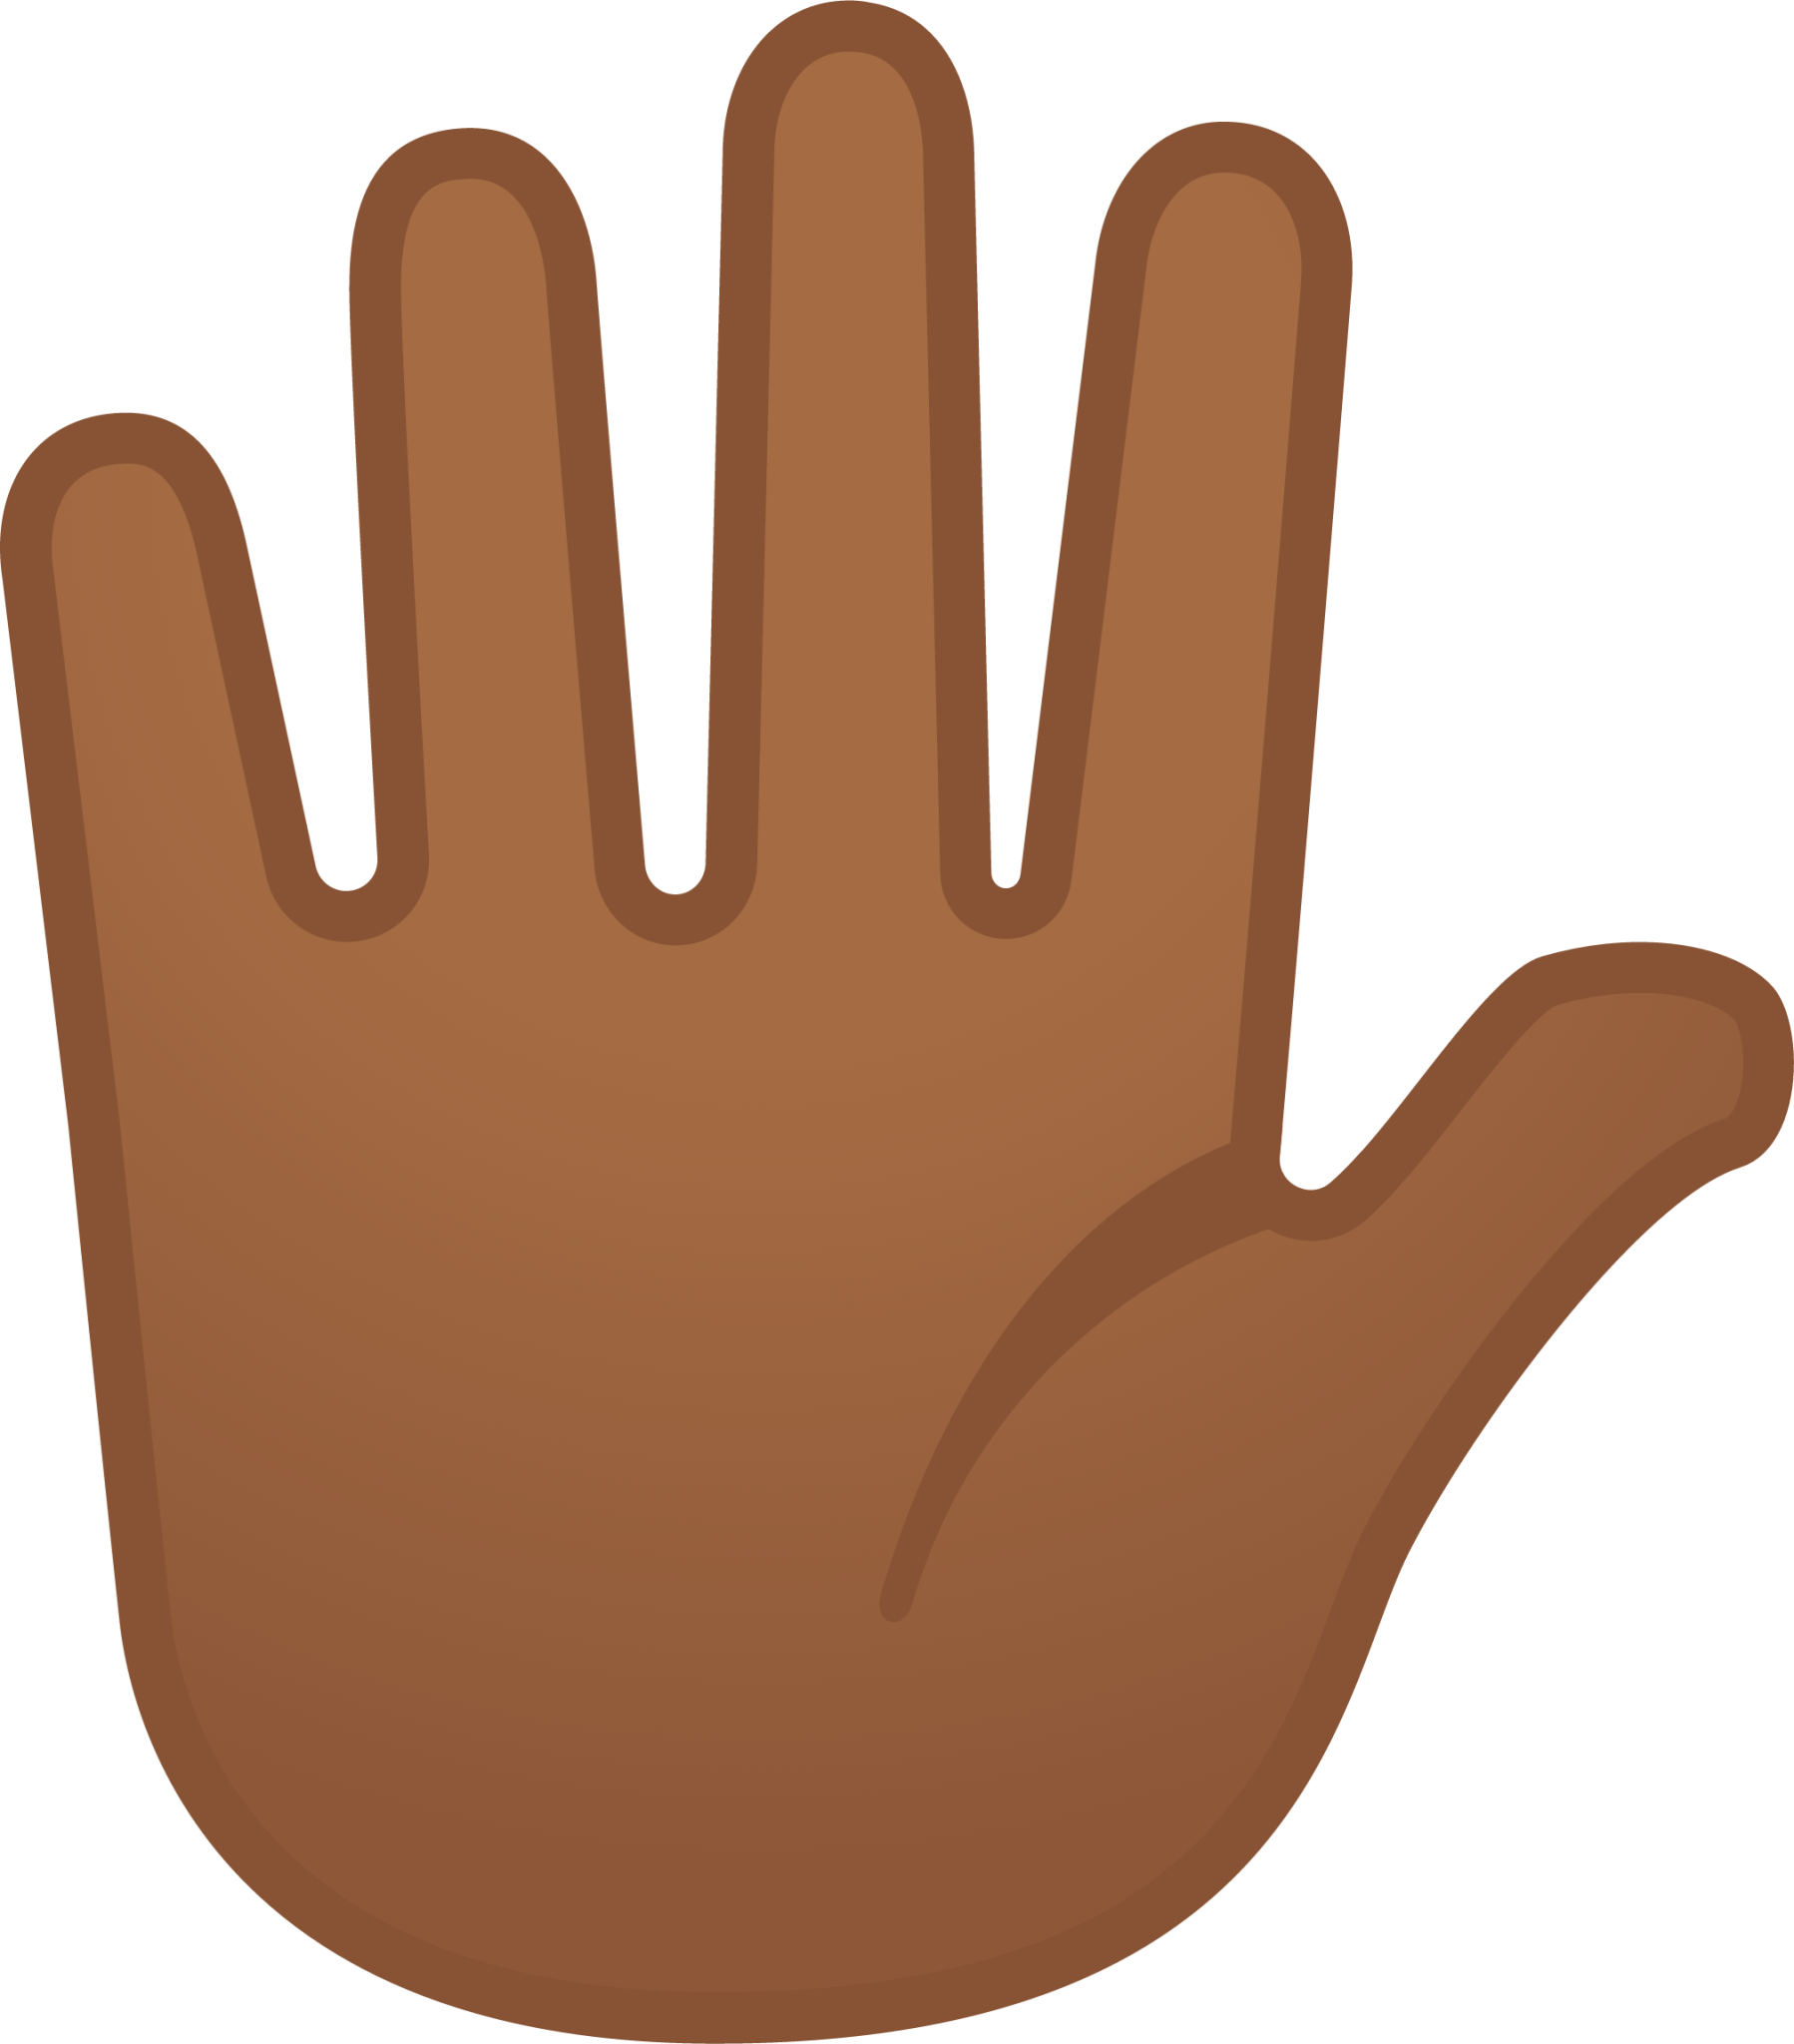 raised hand with fingers splayed: medium-dark skin tone emoji